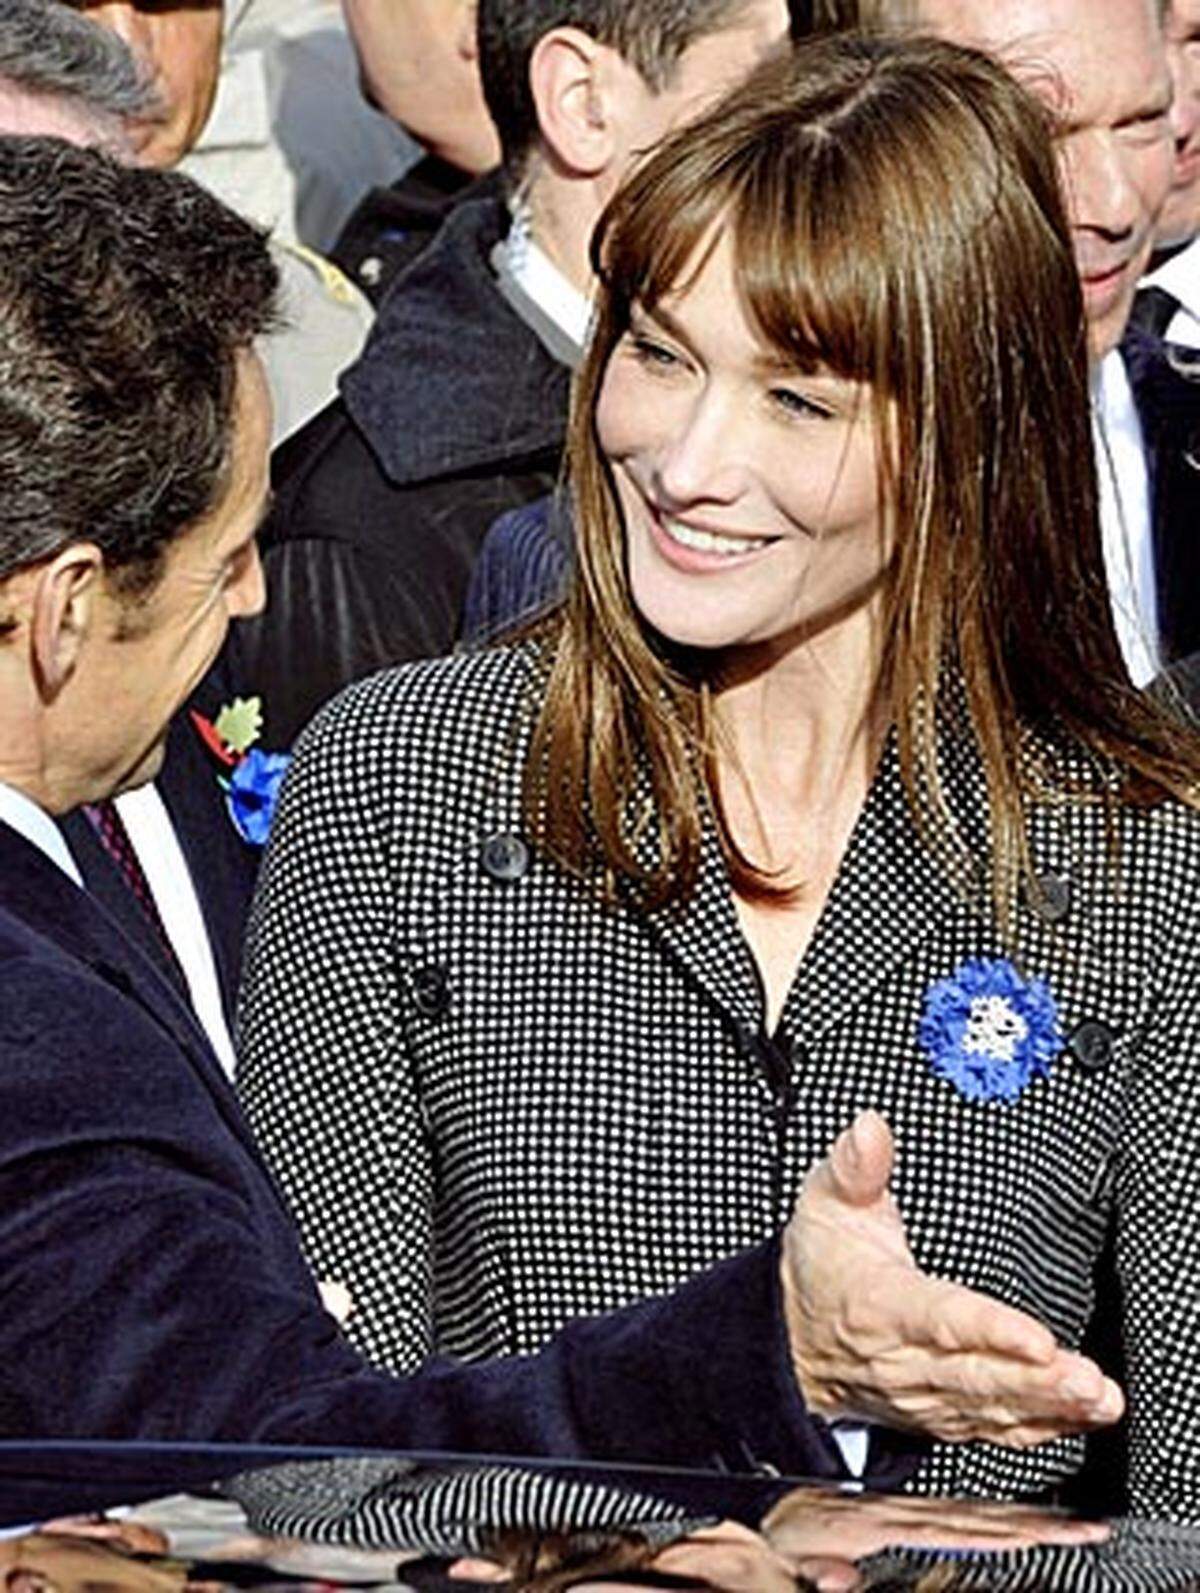 ... und zwar keiner geringeren als Carla Bruni-Sarkozy, der Gattin des französischen Präsidenten. Ehemals Model und nach wie vor Chanson-Sängerin, füllte Bruni mit ihren Affären die Seiten der Klatsch-Magazine und posierte spärlich bekleidet. Nach der Hochzeit mit Nicolas Sarkozy mauserte sich die gebürtige Italienerin zur Première Dame, schlicht gekleidet und mit flachem Schuhwerk - um ihren Ehemann nicht zu überragen. Sie äußert sich immer wieder zu sozialen Themen, am Parkett der Weltpolitik muss Sarkozy weiterhin alleine tanzen.